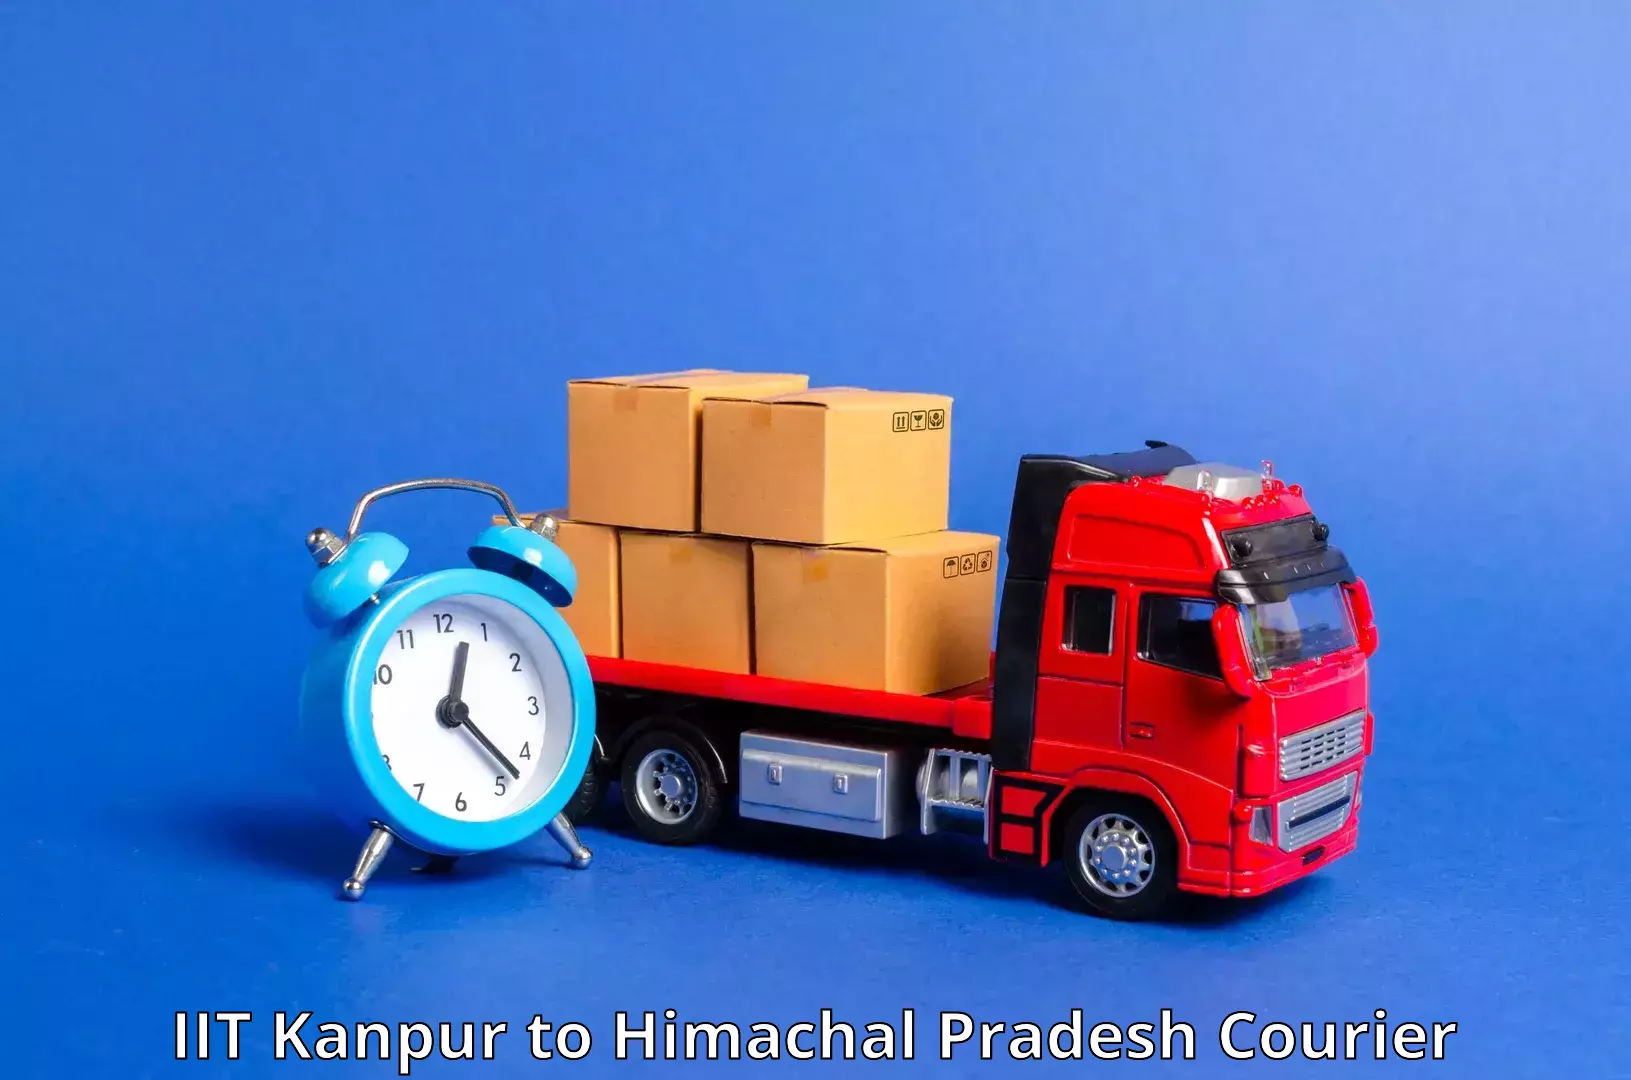 Express postal services IIT Kanpur to Dalhousie